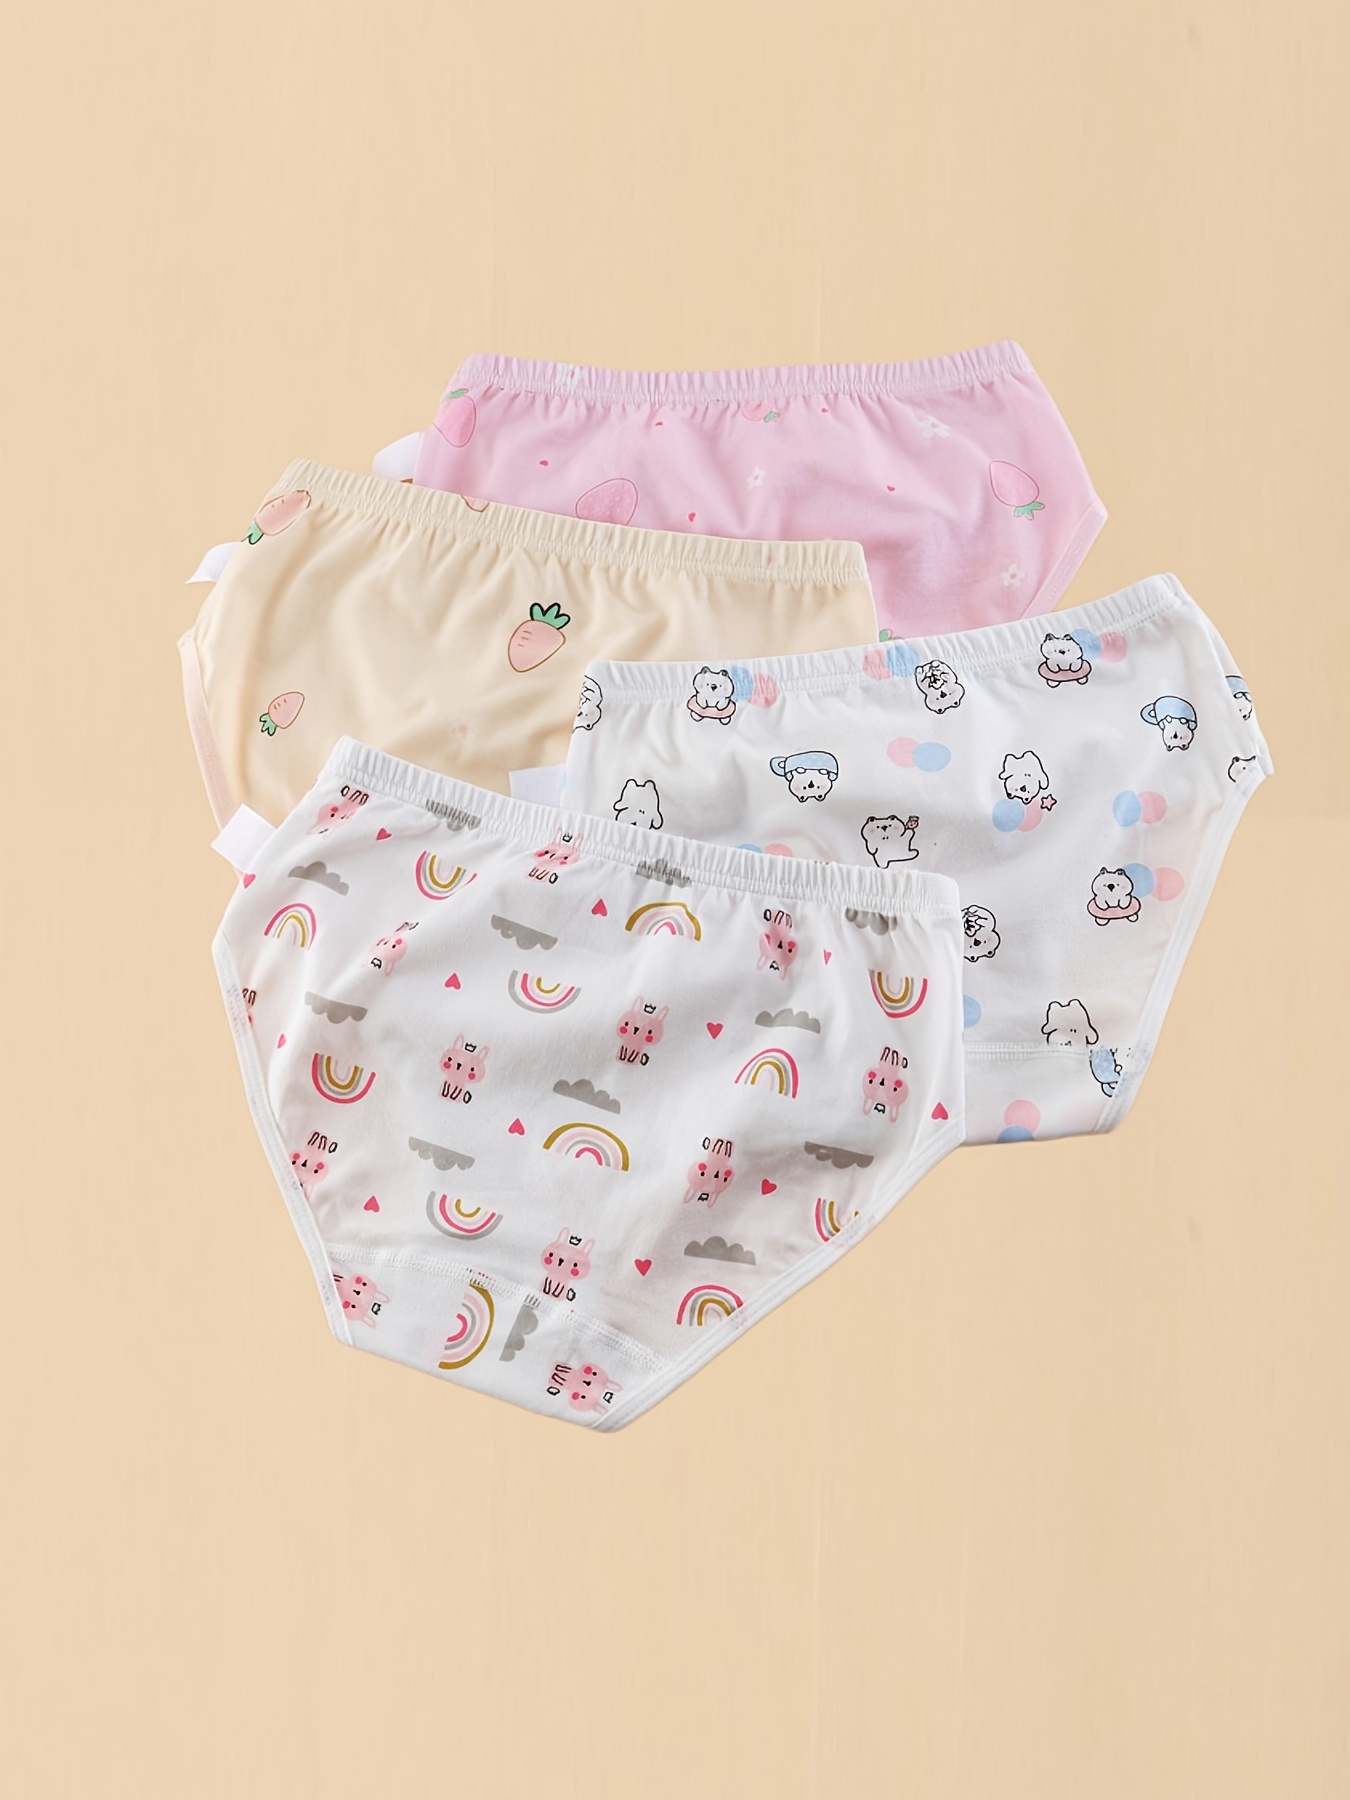  Teen Underwear Kids Infant Baby Girls Underpants Cute